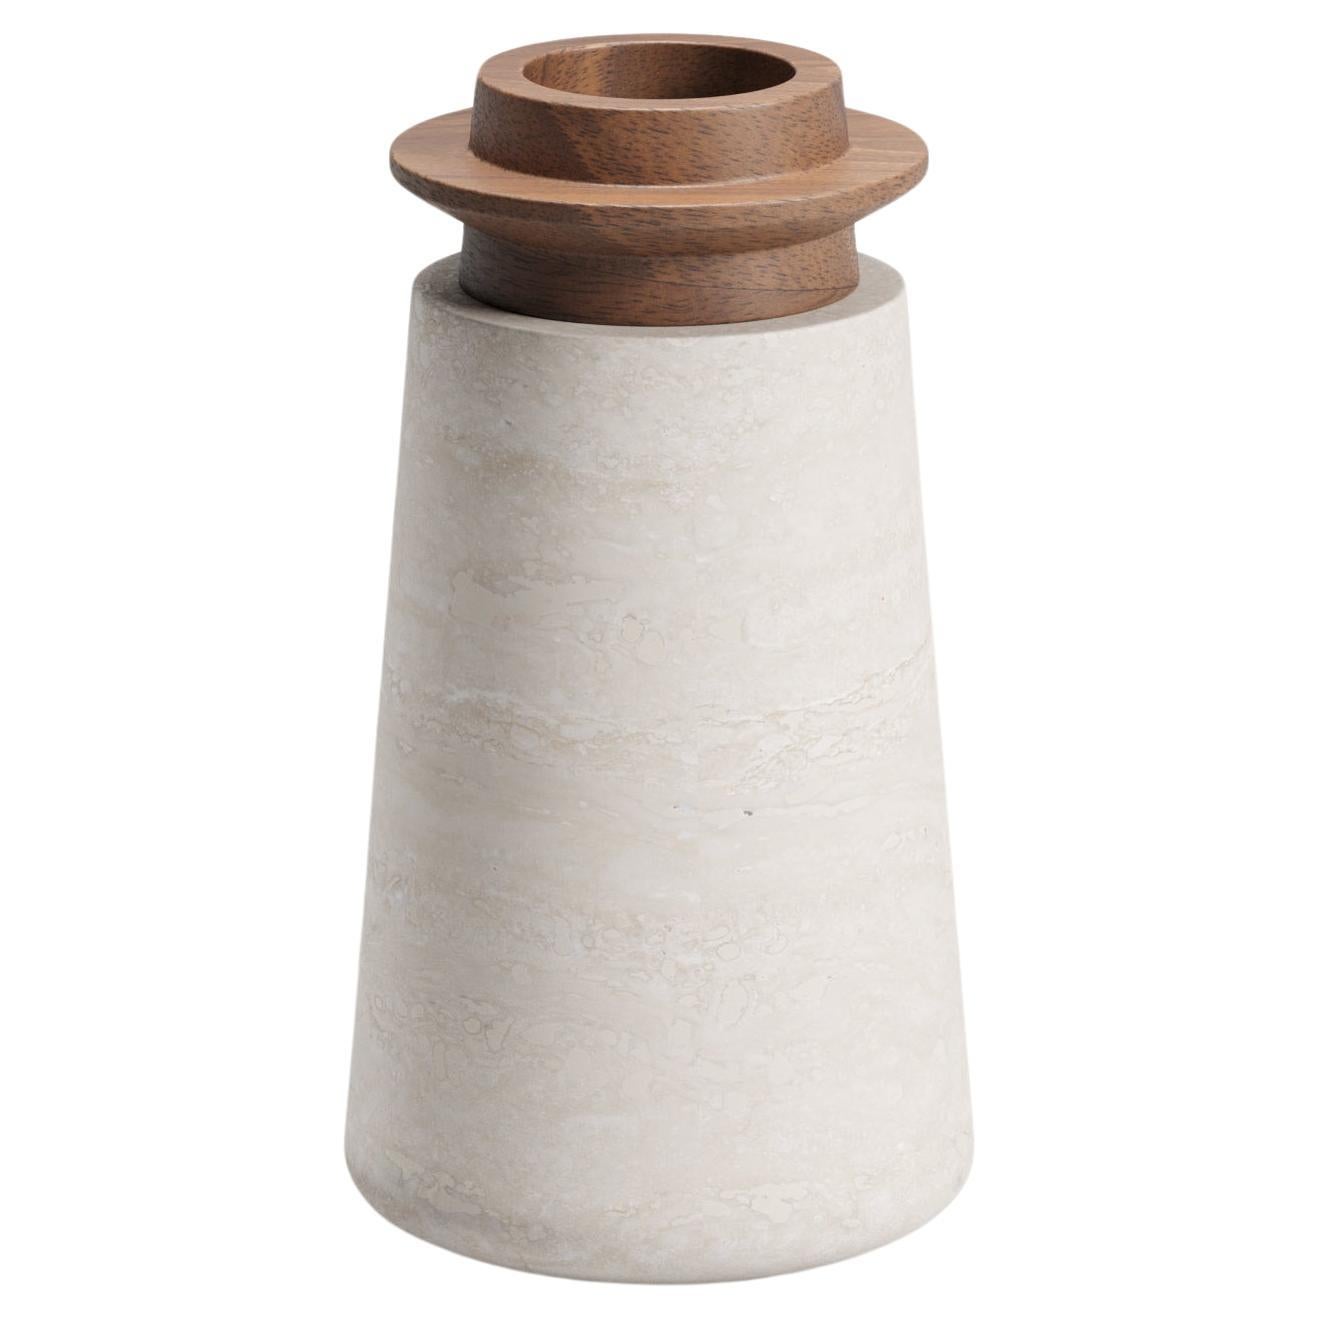 Trivoli-Vase aus Nussbaumholz, S, von Ivan Colominas